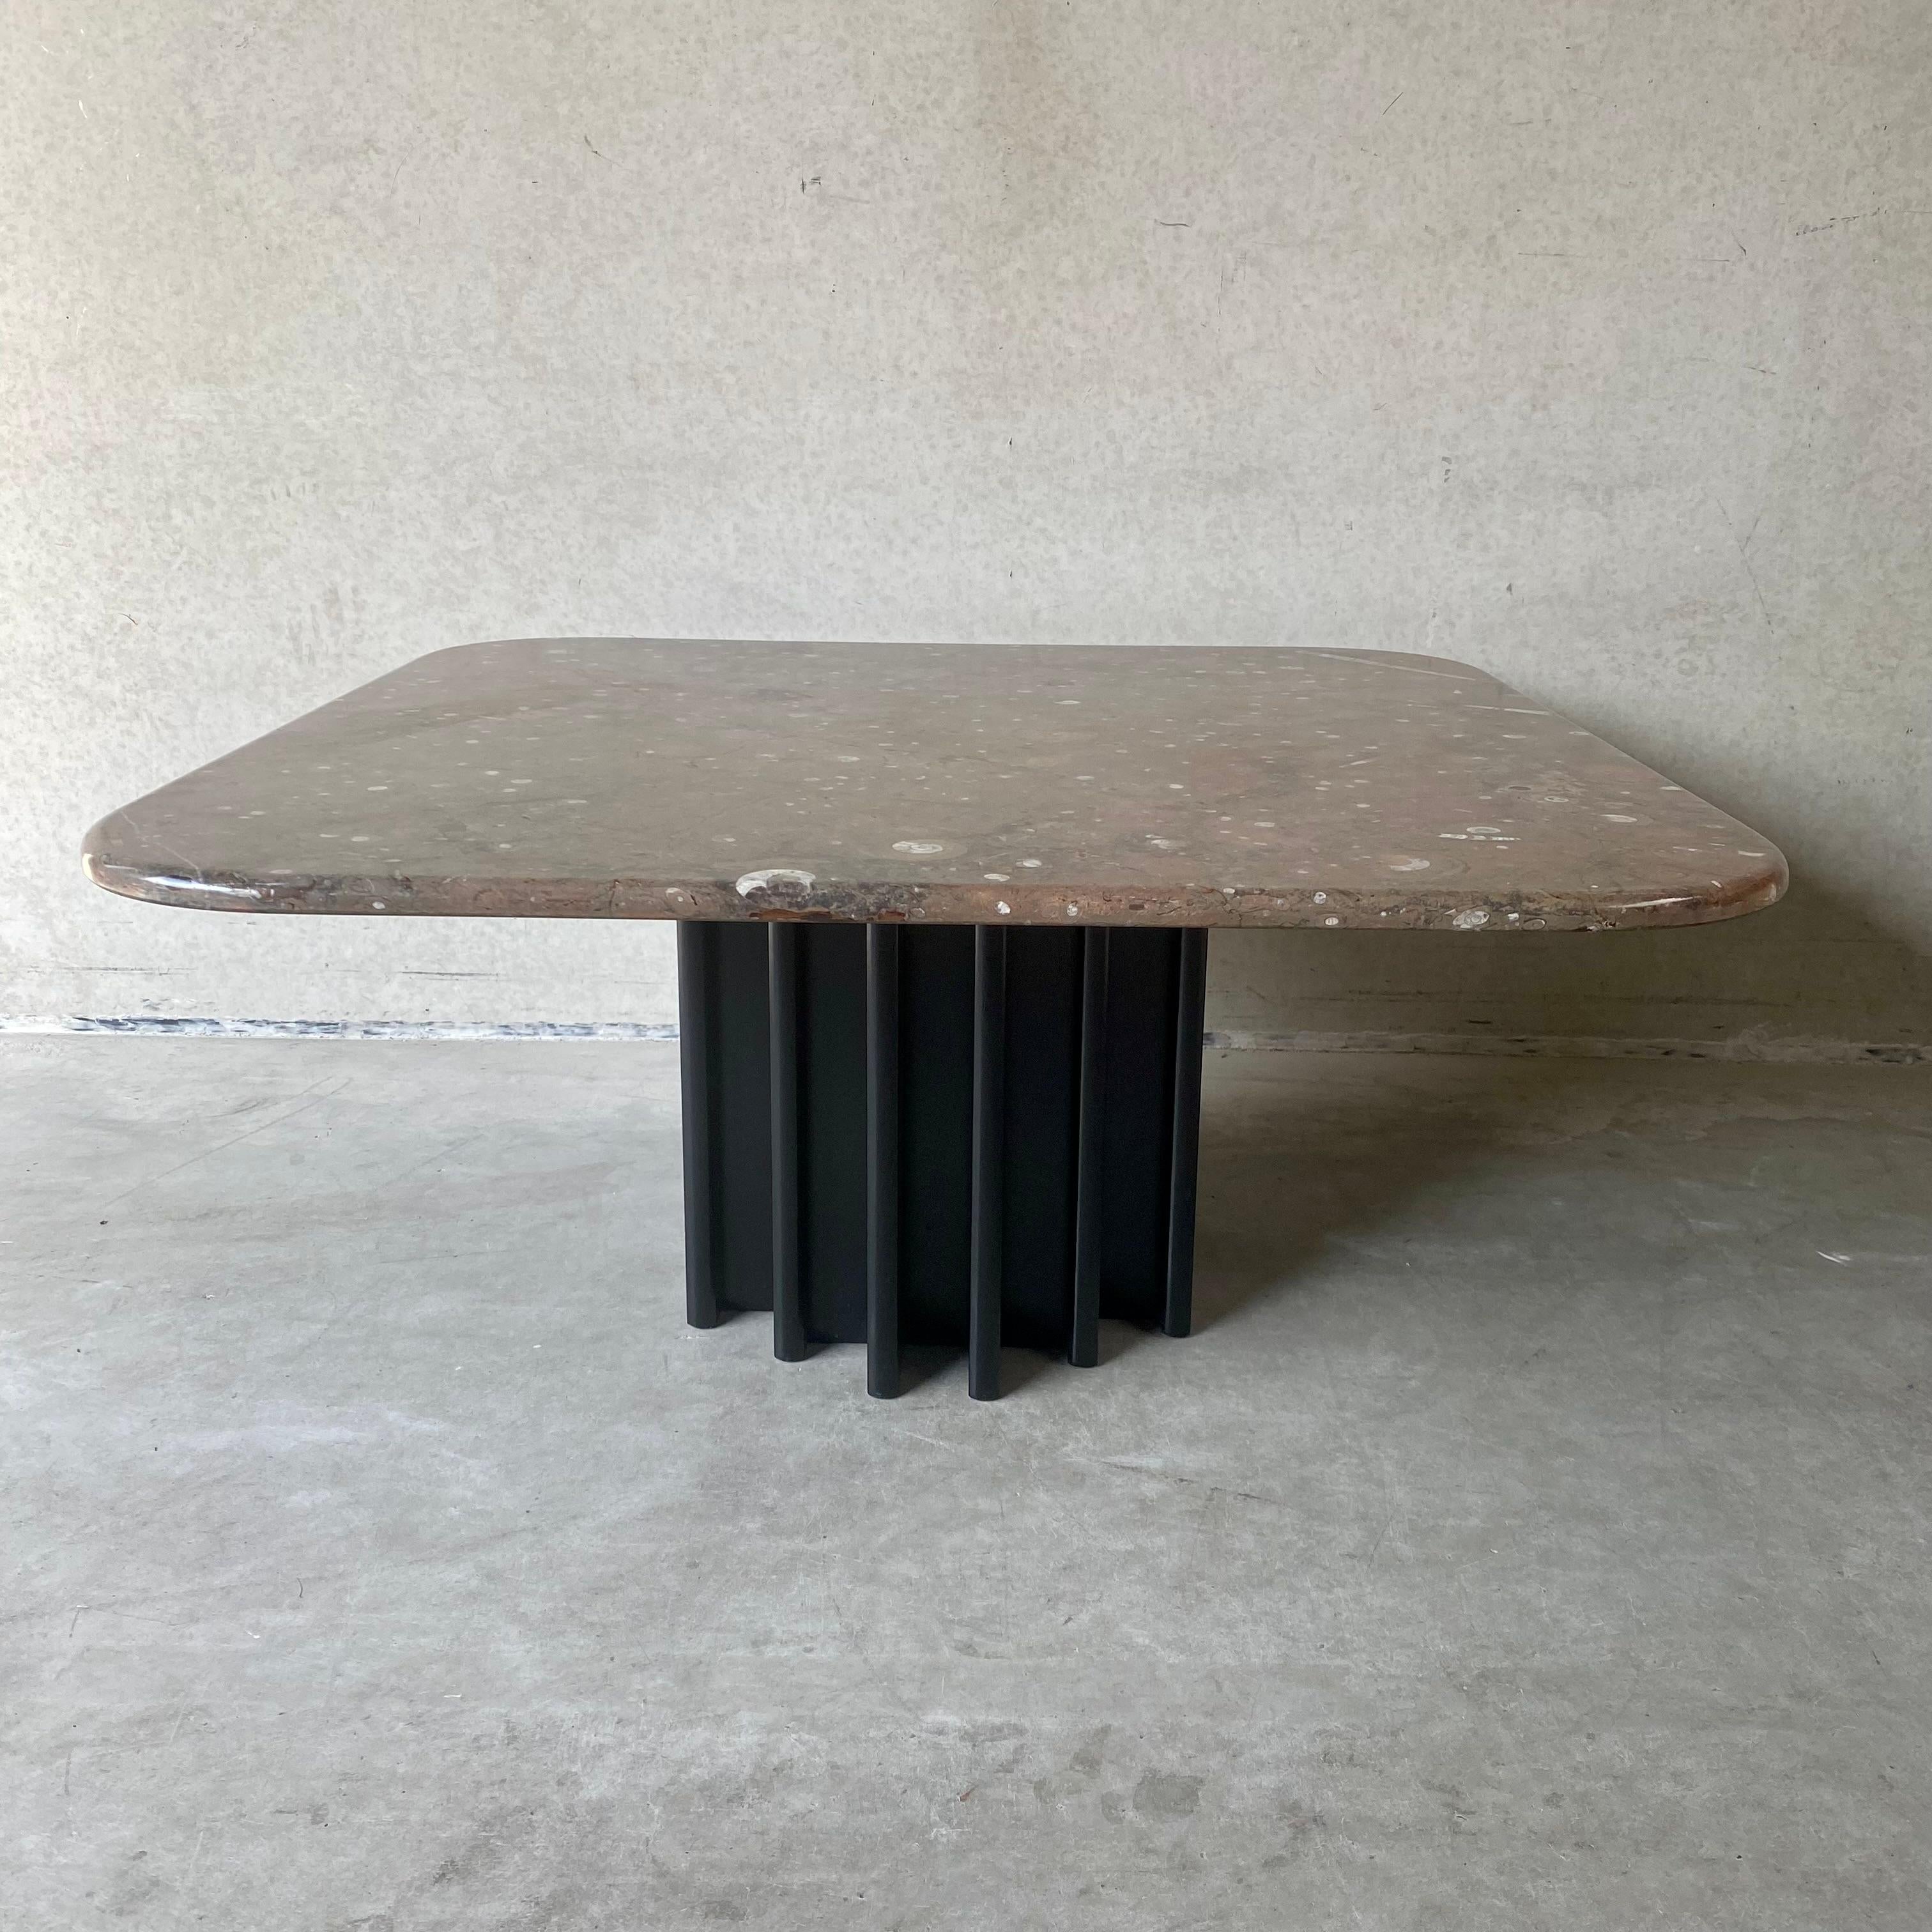 TABLE À CAFÉ EN PIERRE FOSSILÉE DE HEINZ LILIENTHAL, années 1980

Une table basse accrocheuse, conçue par Heinz Lilienthal et fabriquée en Allemagne dans les années 1980.

La caractéristique unique de cette table est le grand plateau en pierre avec